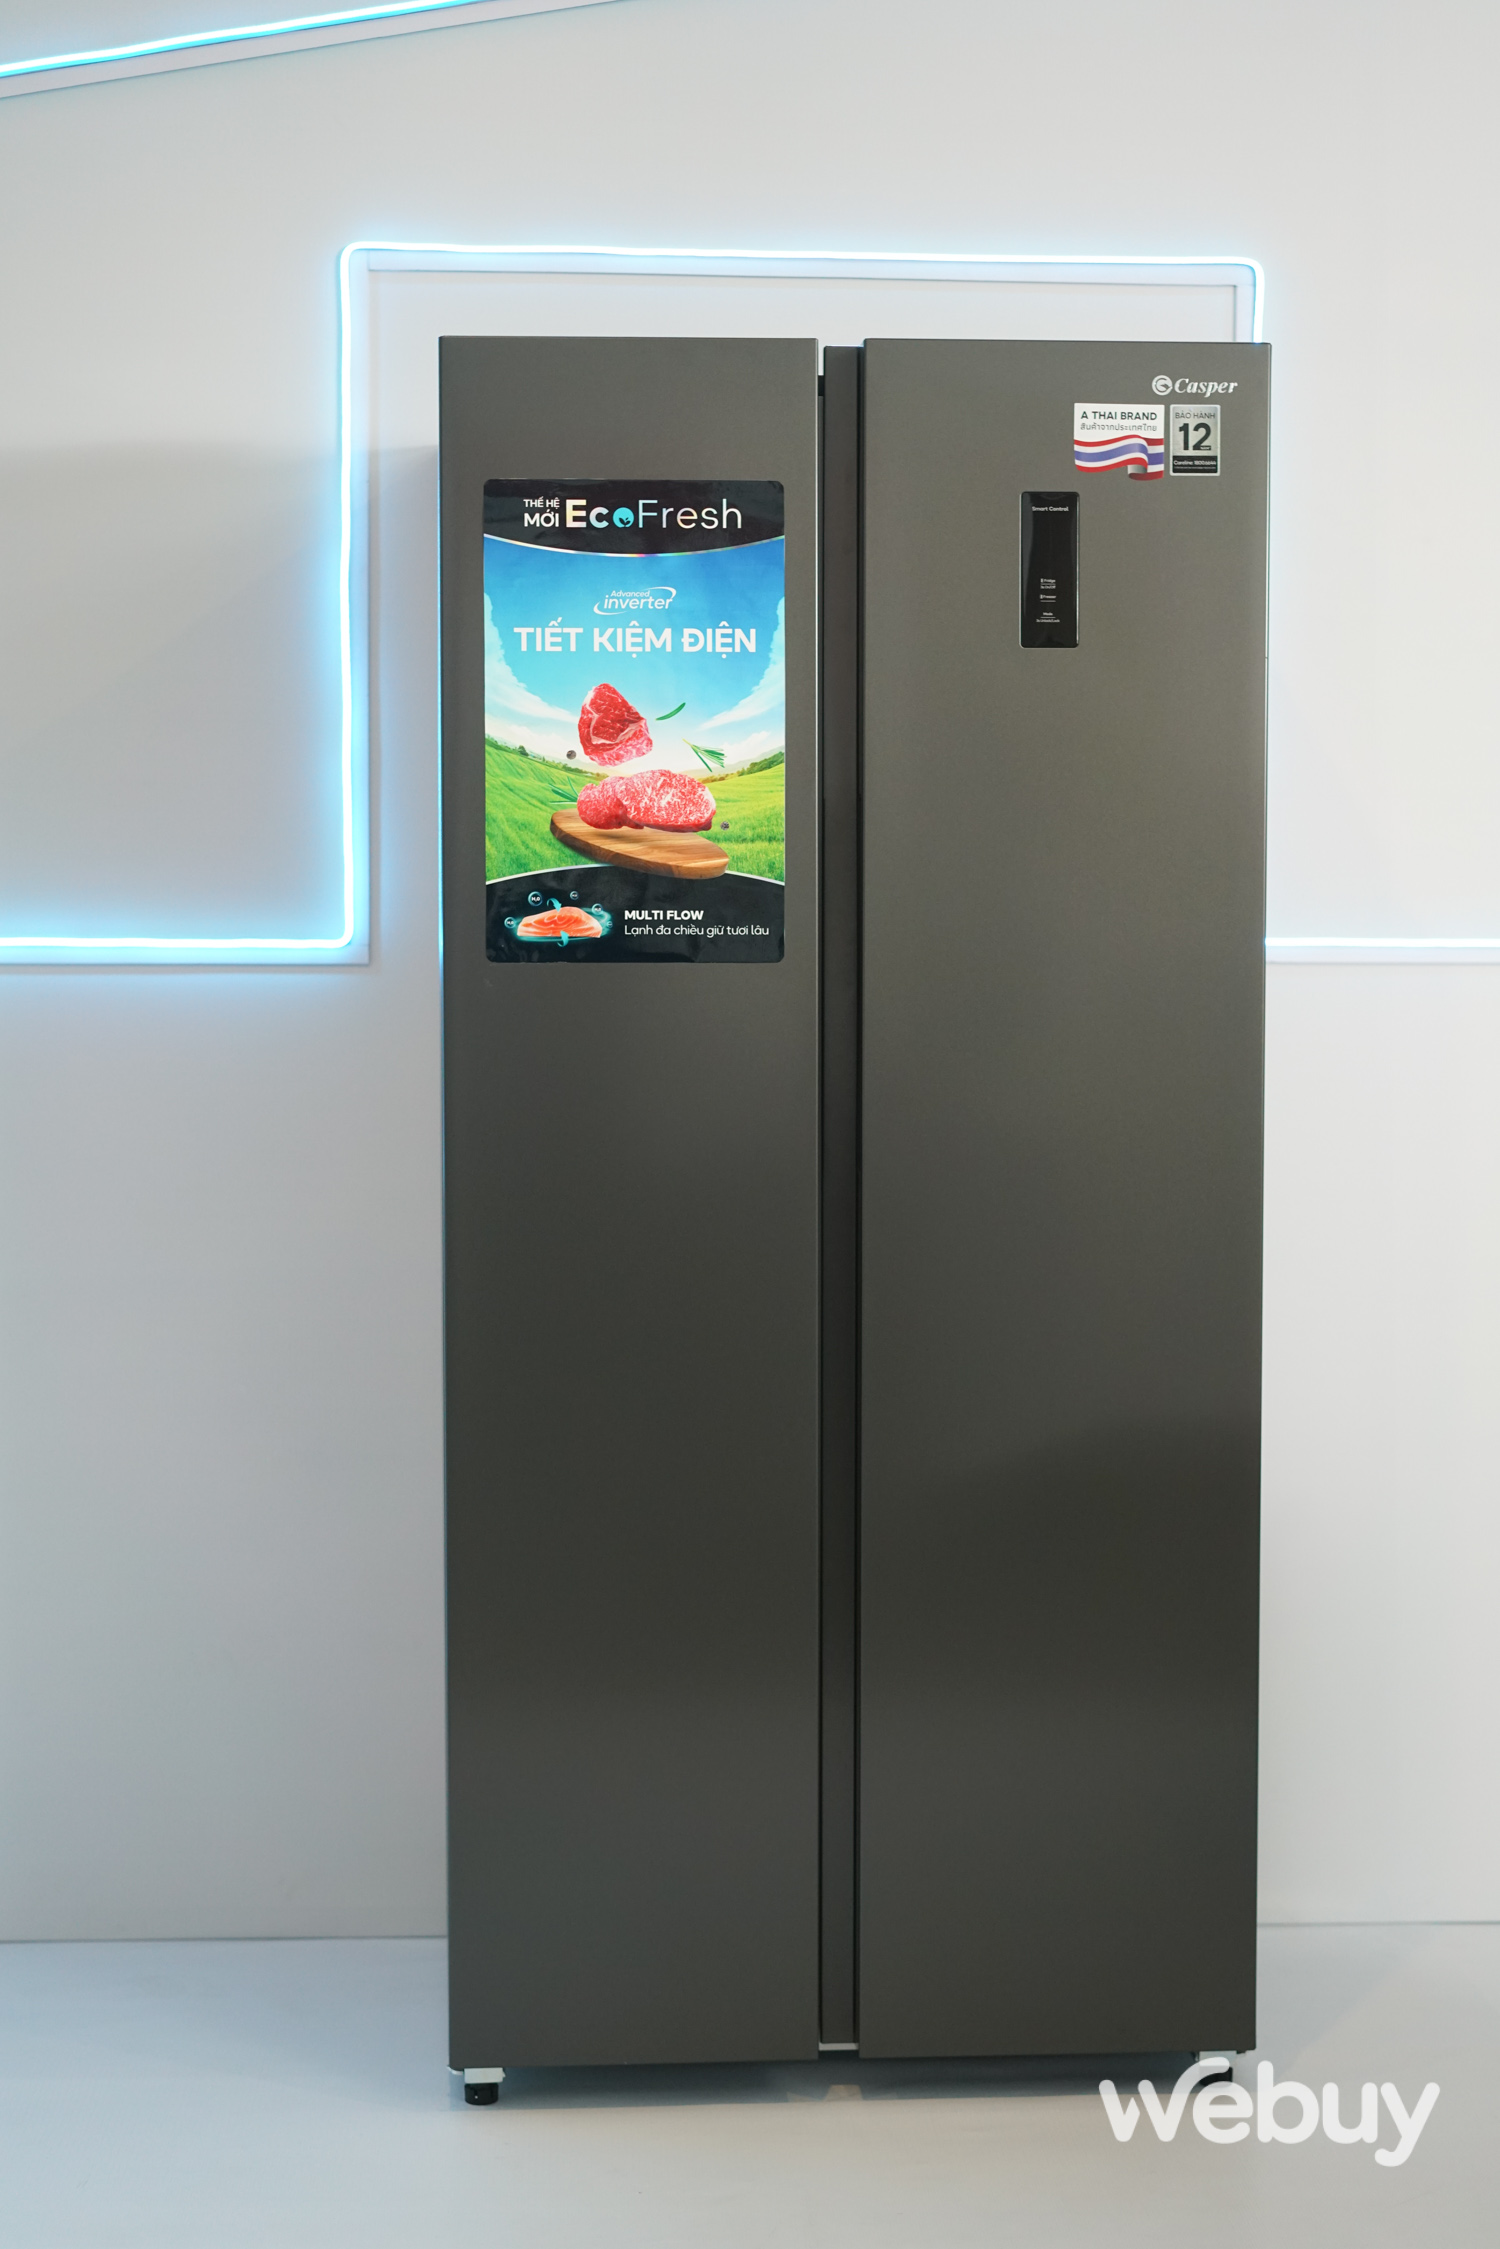 Casper ra mắt loạt máy giặt và tủ lạnh với nhiều tính năng cao cấp ở tầm giá dễ tiếp cận - Ảnh 2.